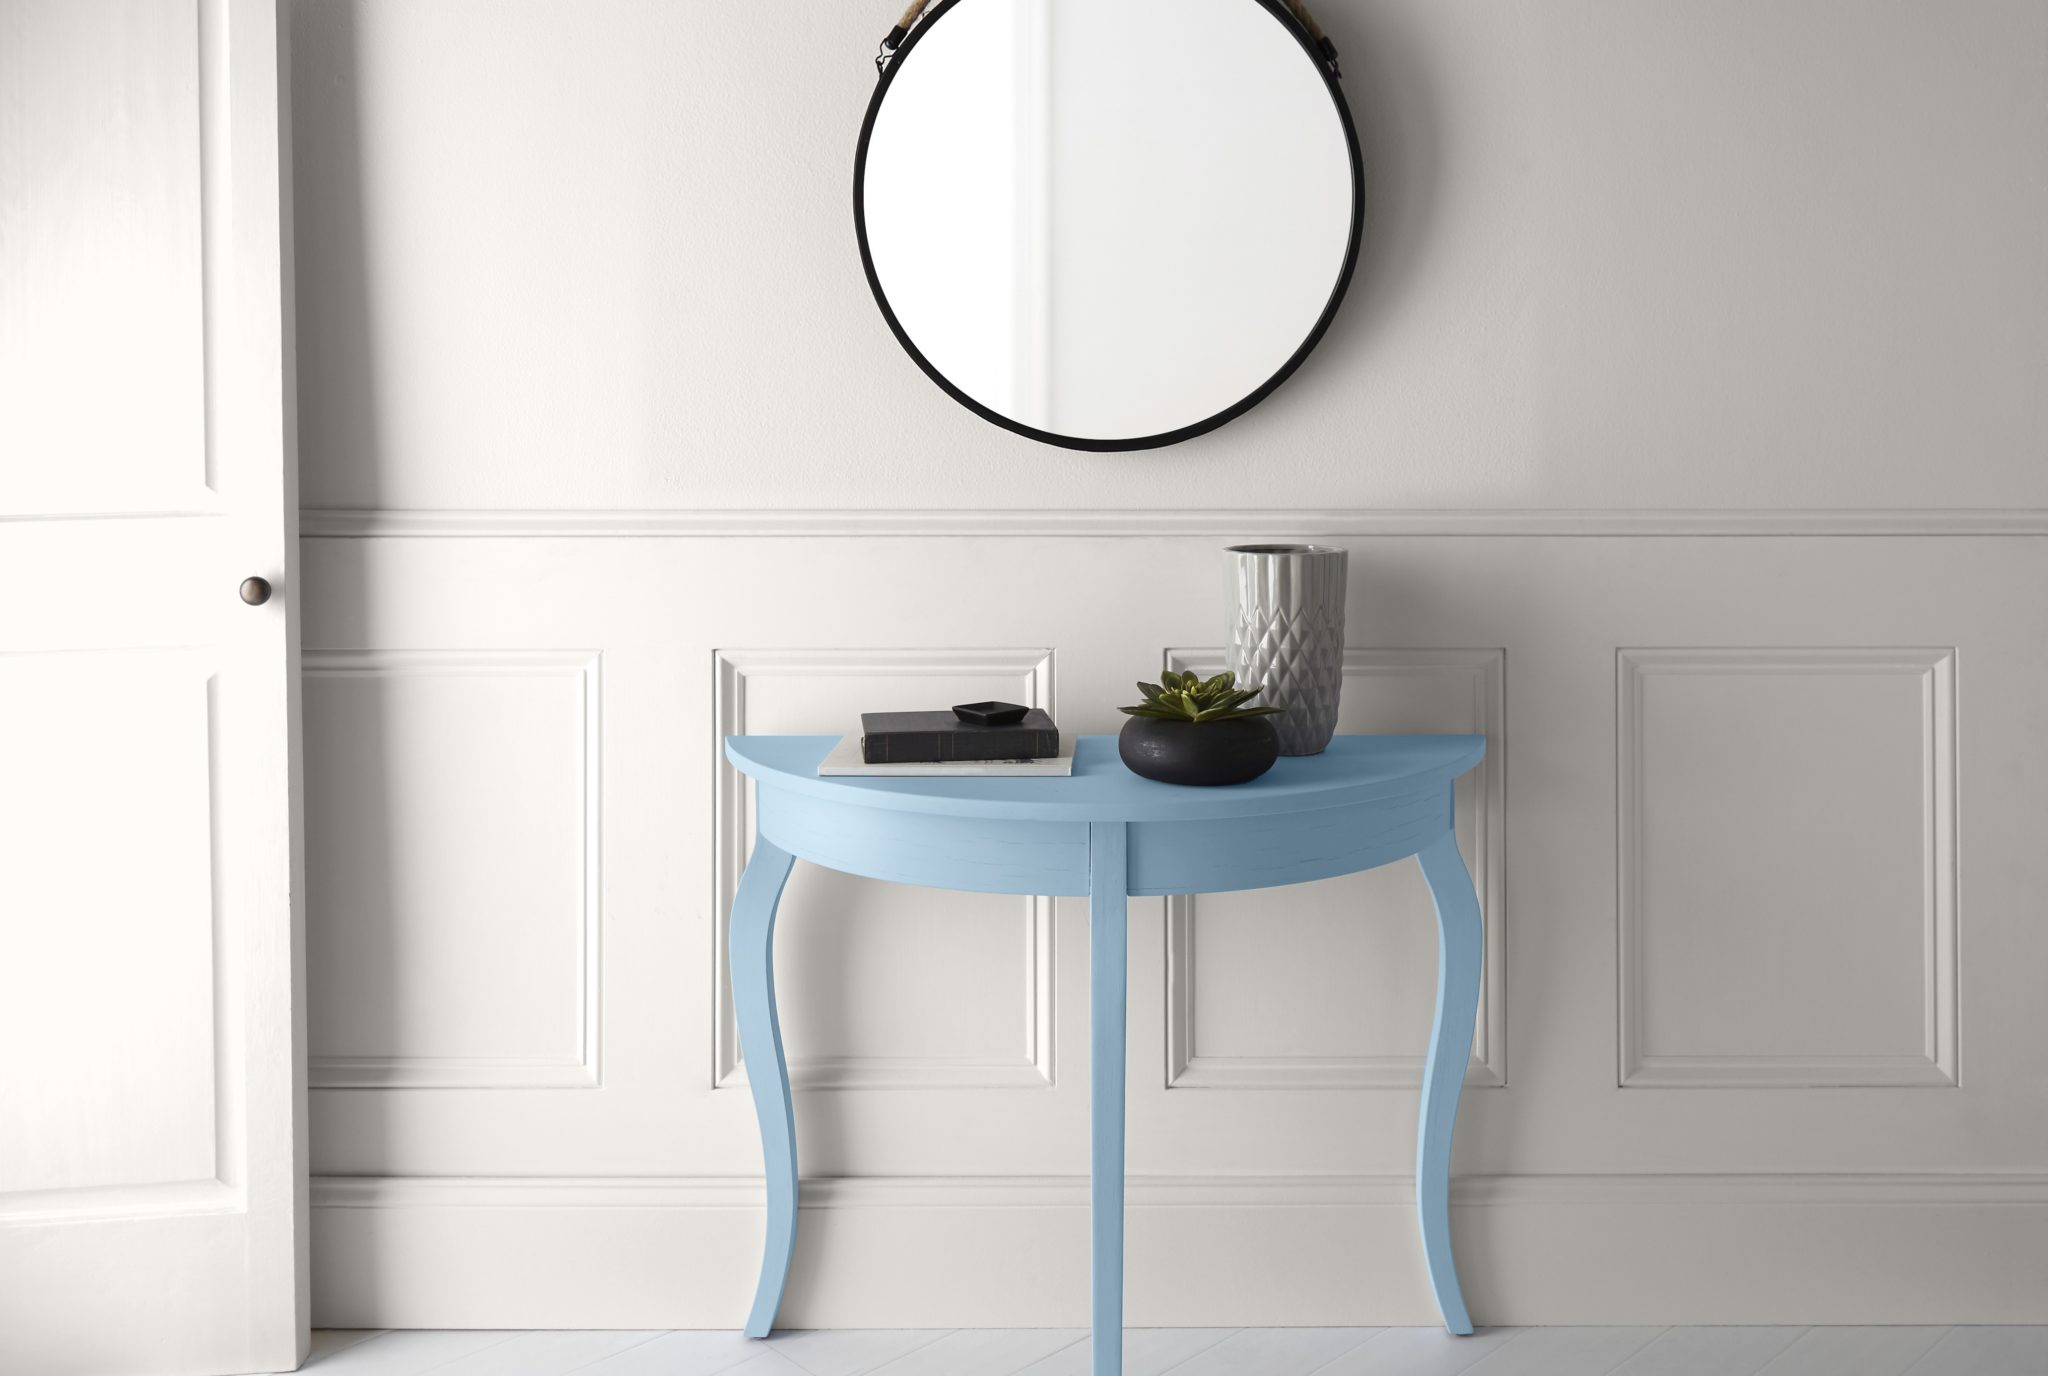 Un couloir tout blanc avec une petite console bleue. On y voit un simple miroir rond et des objets de décoration sur le dessus de la table.